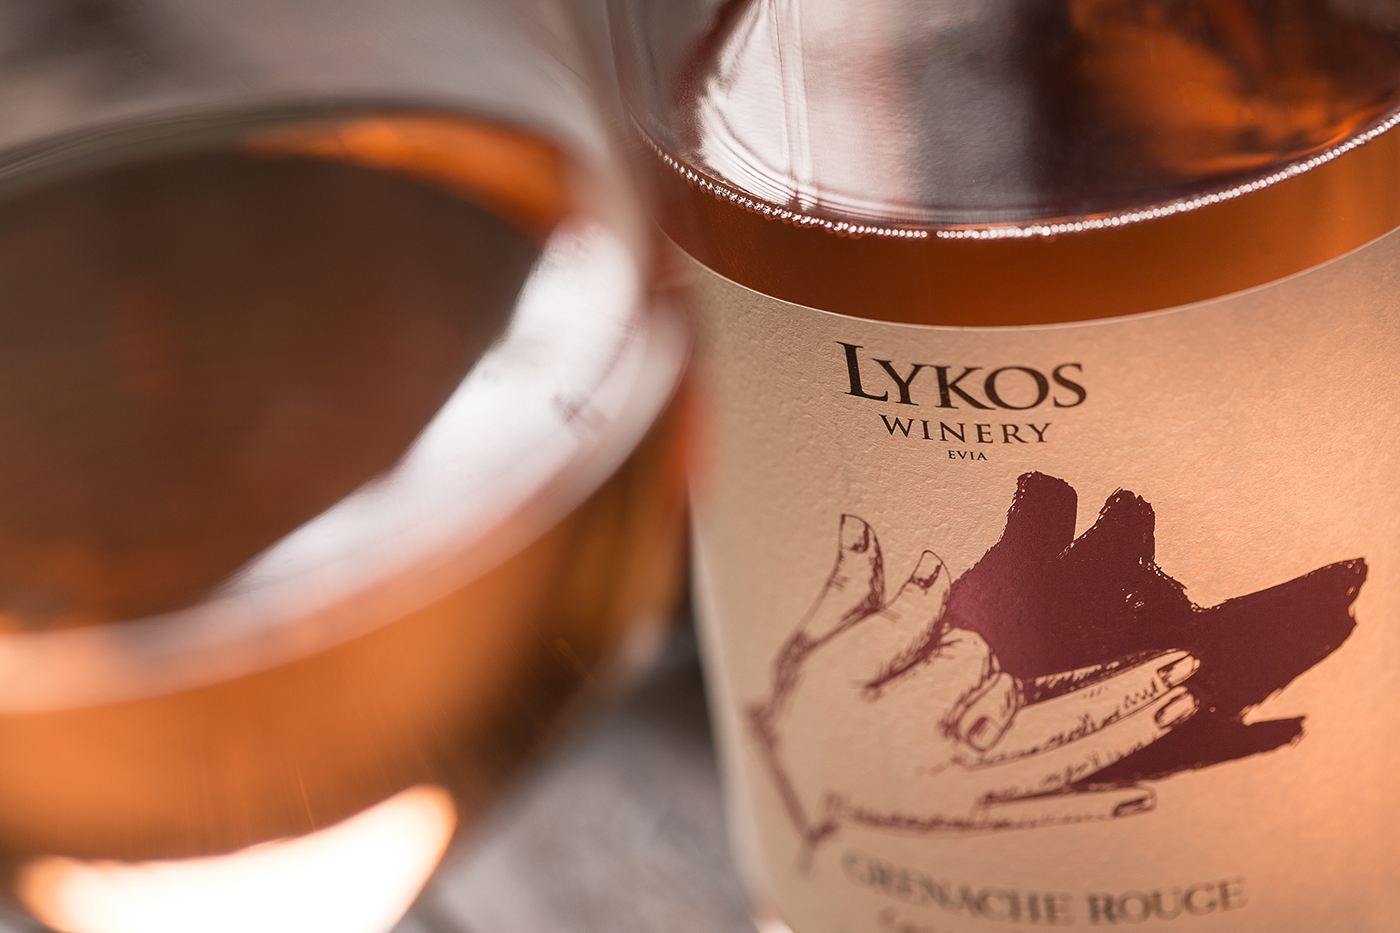 lykos winery wolf wine label greek wine assyrtiko bottle sophiagdotcom sophia georgopoulou design shadow play hands